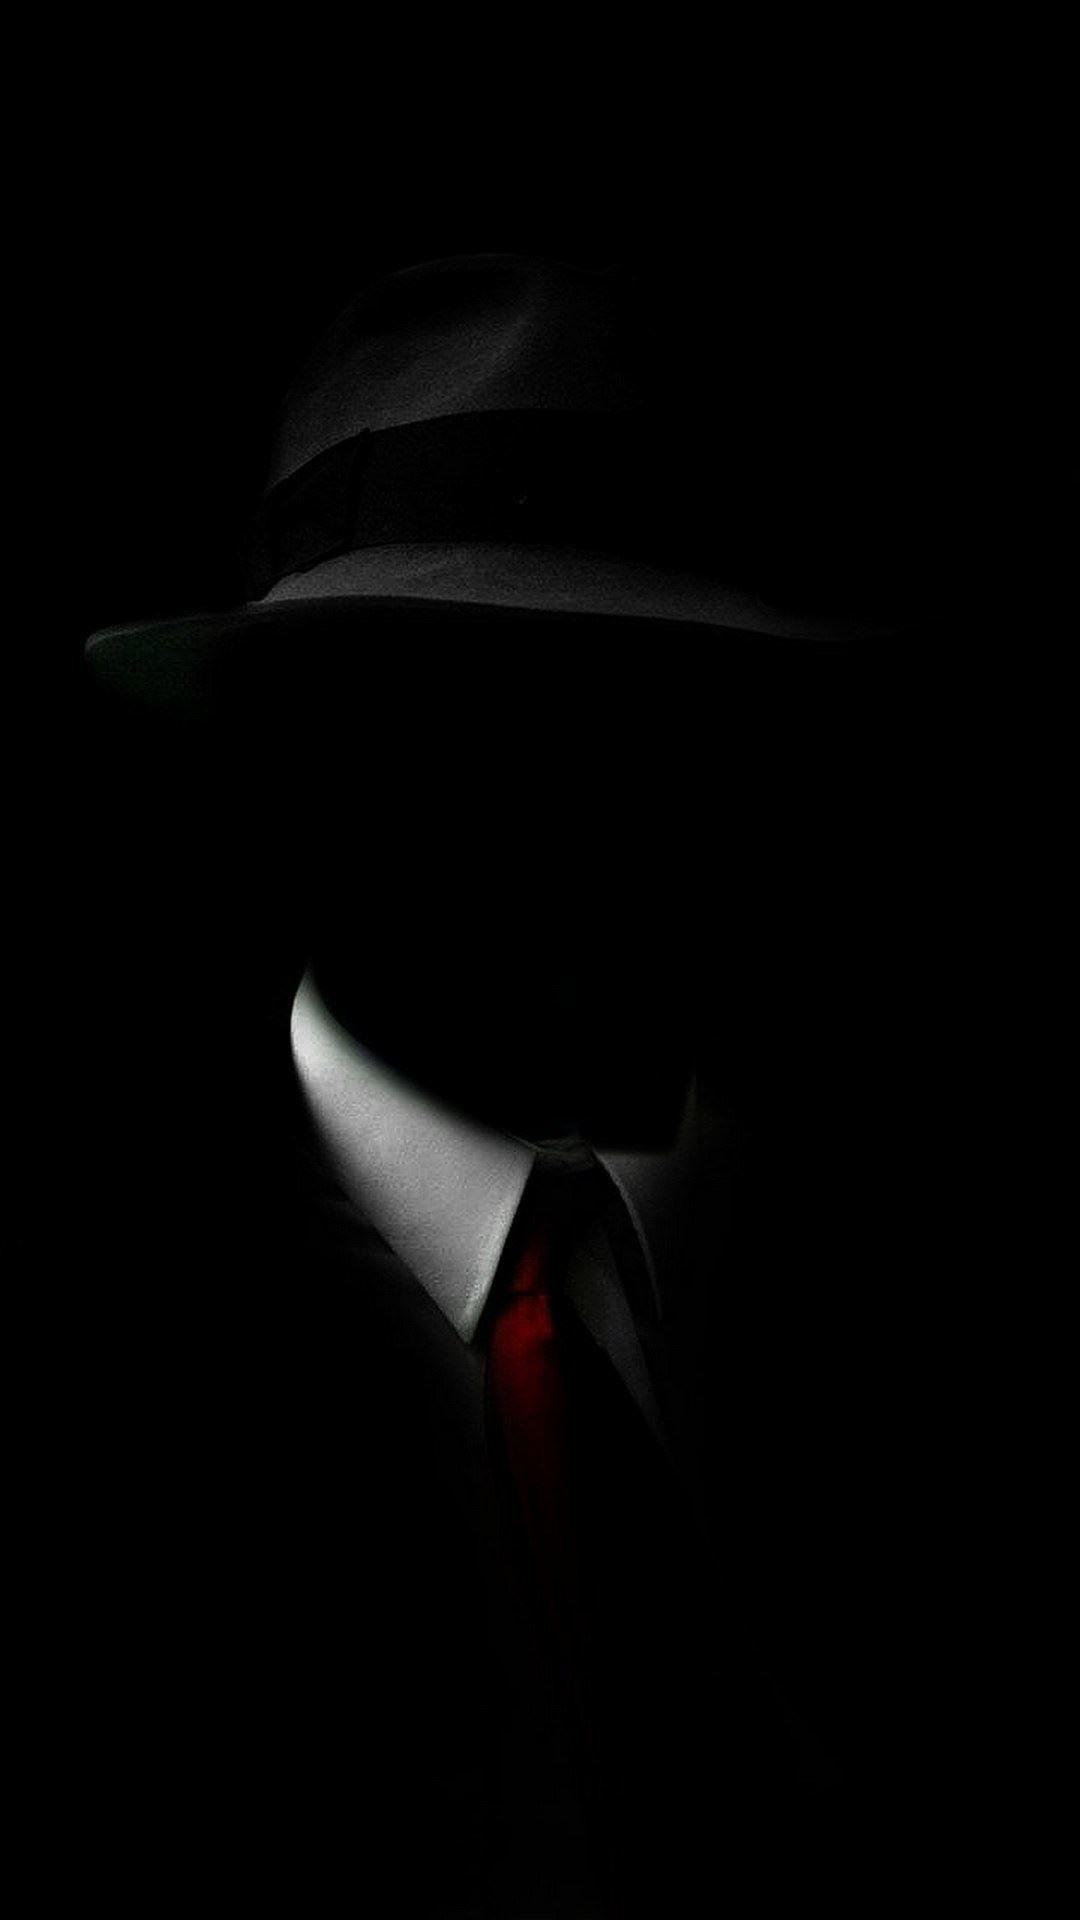 Shadow Man Black Suit Hat Red Tie iPhone 6 Plus HD Wallpaper. iPhone wallpaper for guys, Black wallpaper iphone, Black wallpaper